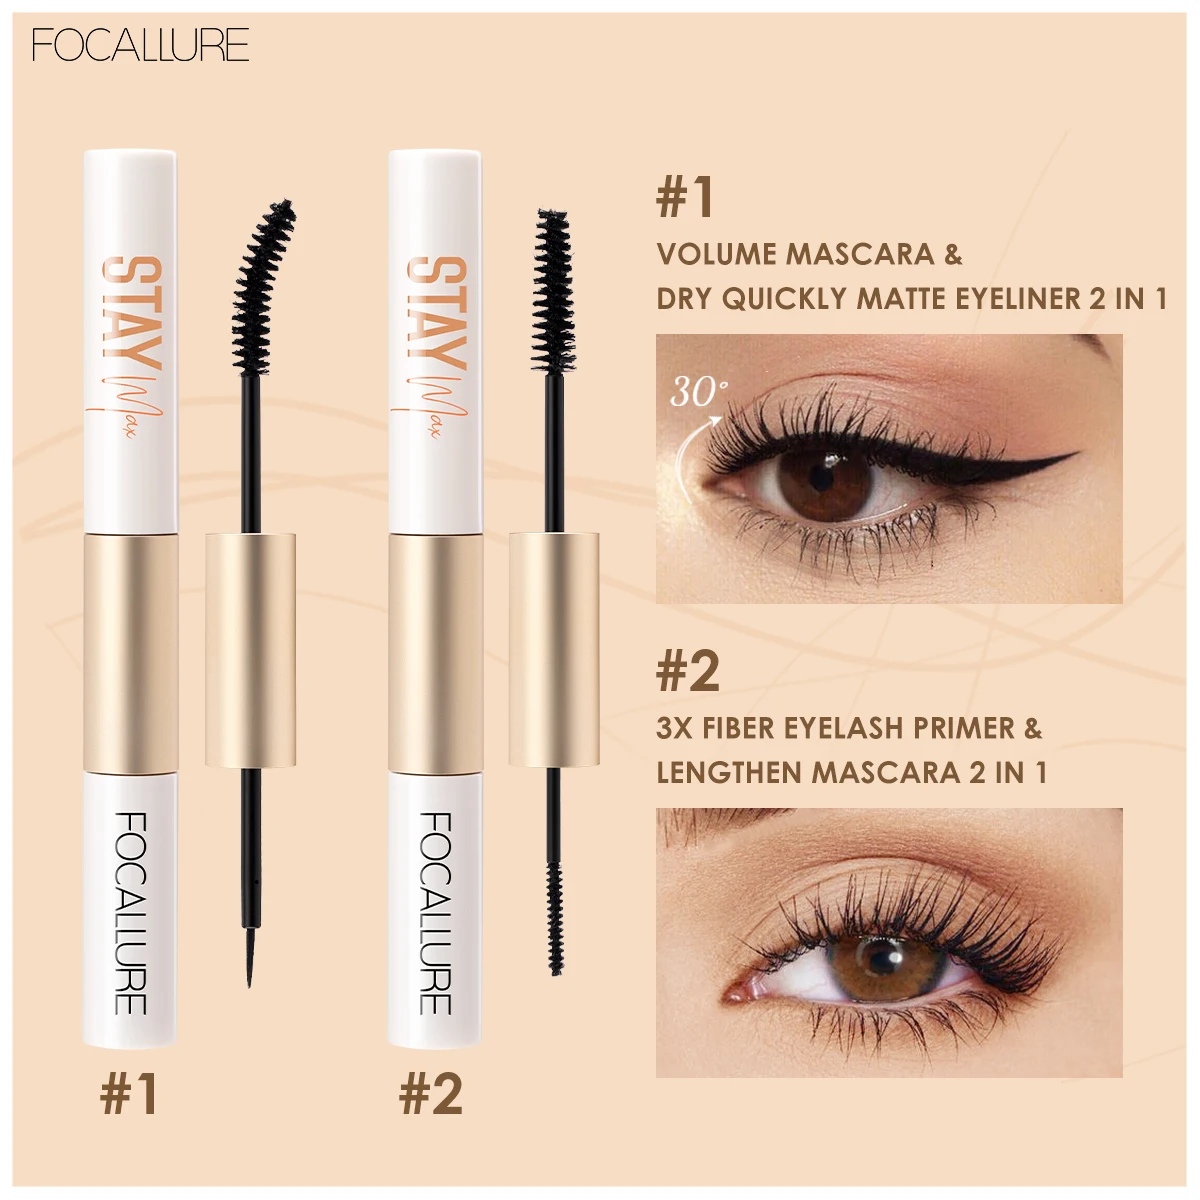 

Focallure Mascara 2 In 1 Long-Lasing Waterproof Mascara Eyeliner And Fiber Eyelash Primer 3X Lengthen Eyelashes Cosmetic Makeup